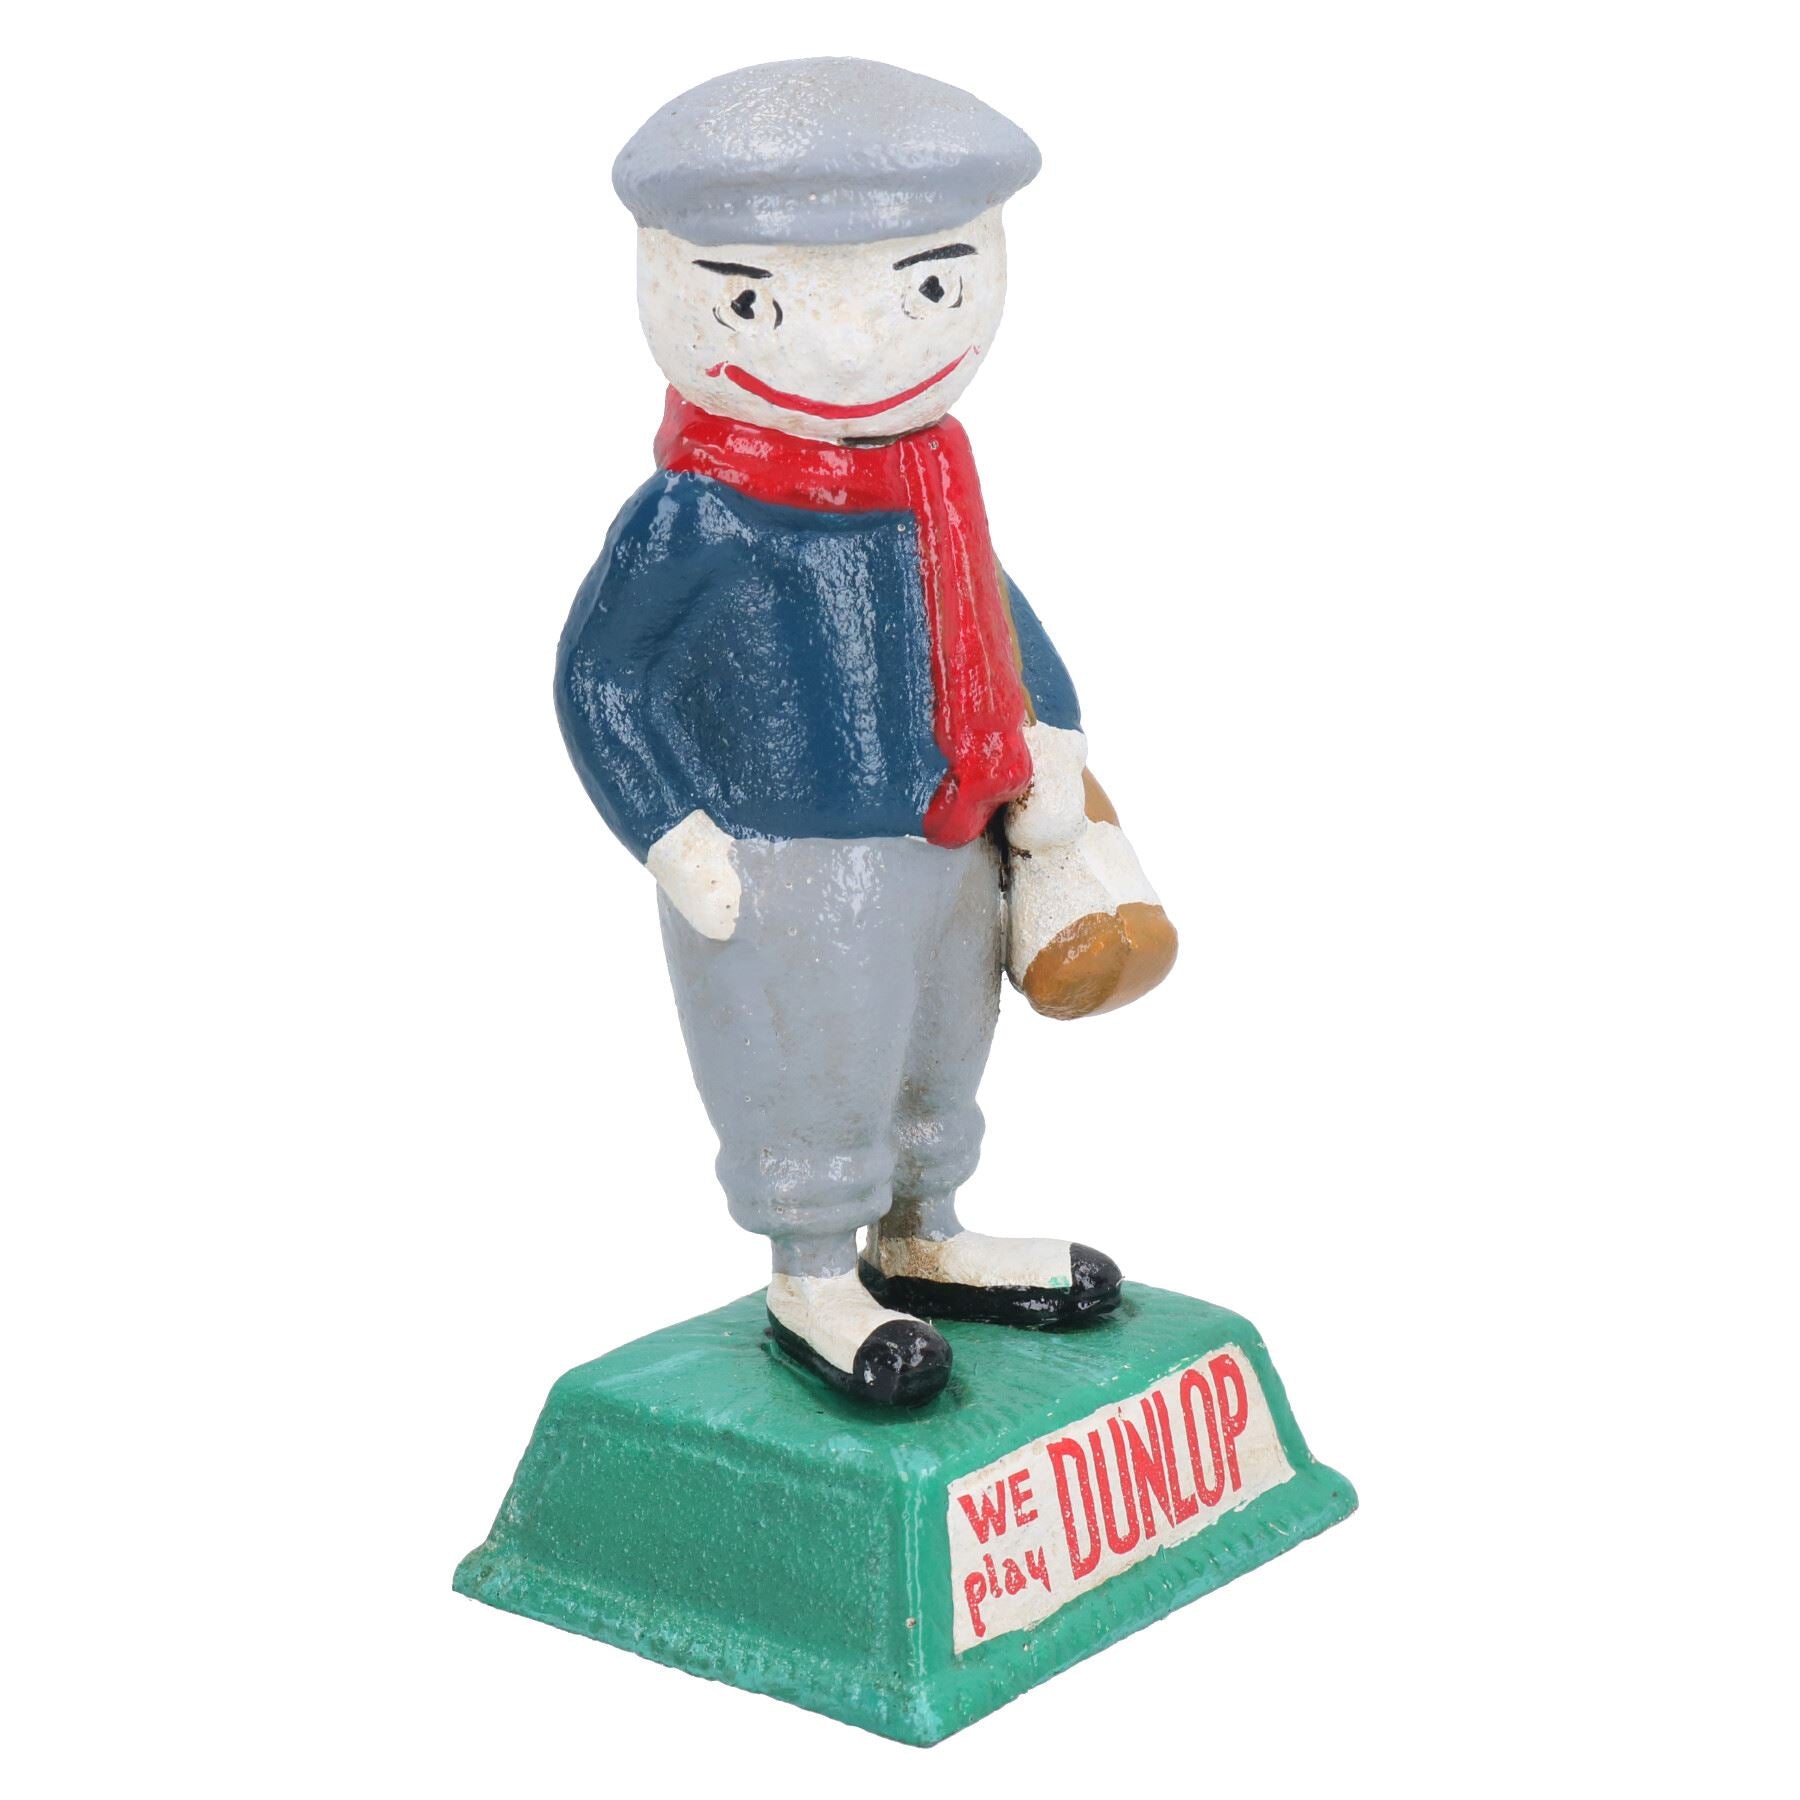 Dunlop Golf Man Figure Statue Cast Iron Golfer Mascot Ornament House Home